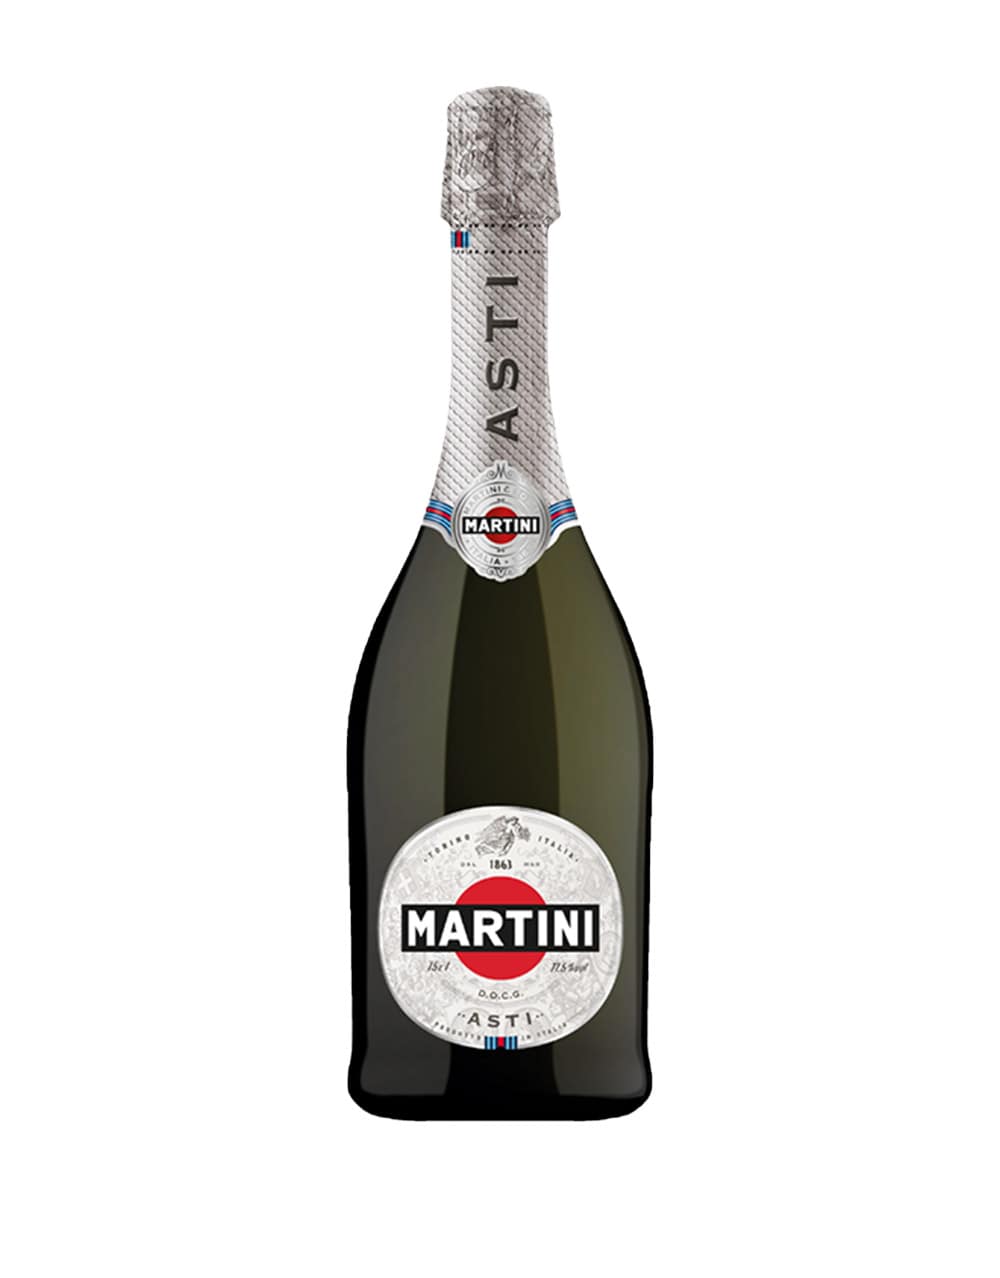 Martini and Rossi Asti